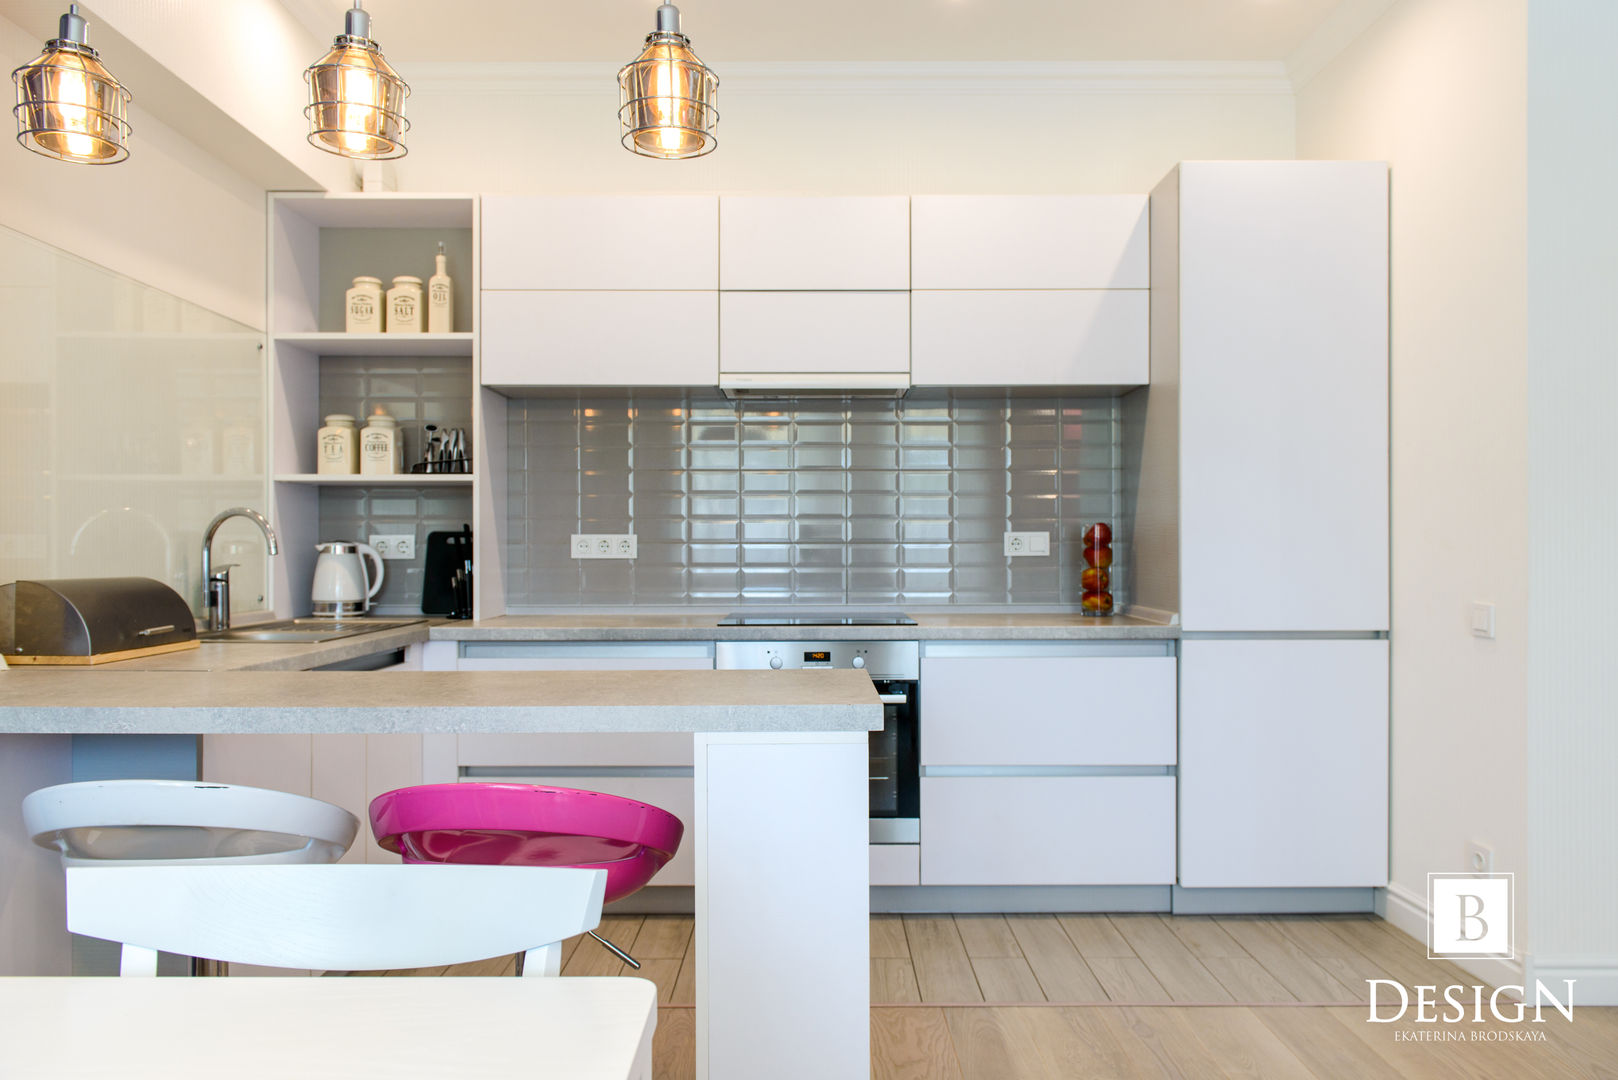 Делаем из однокомнатной квартиры двушку на Голосеевской, B-design B-design Eclectic style kitchen